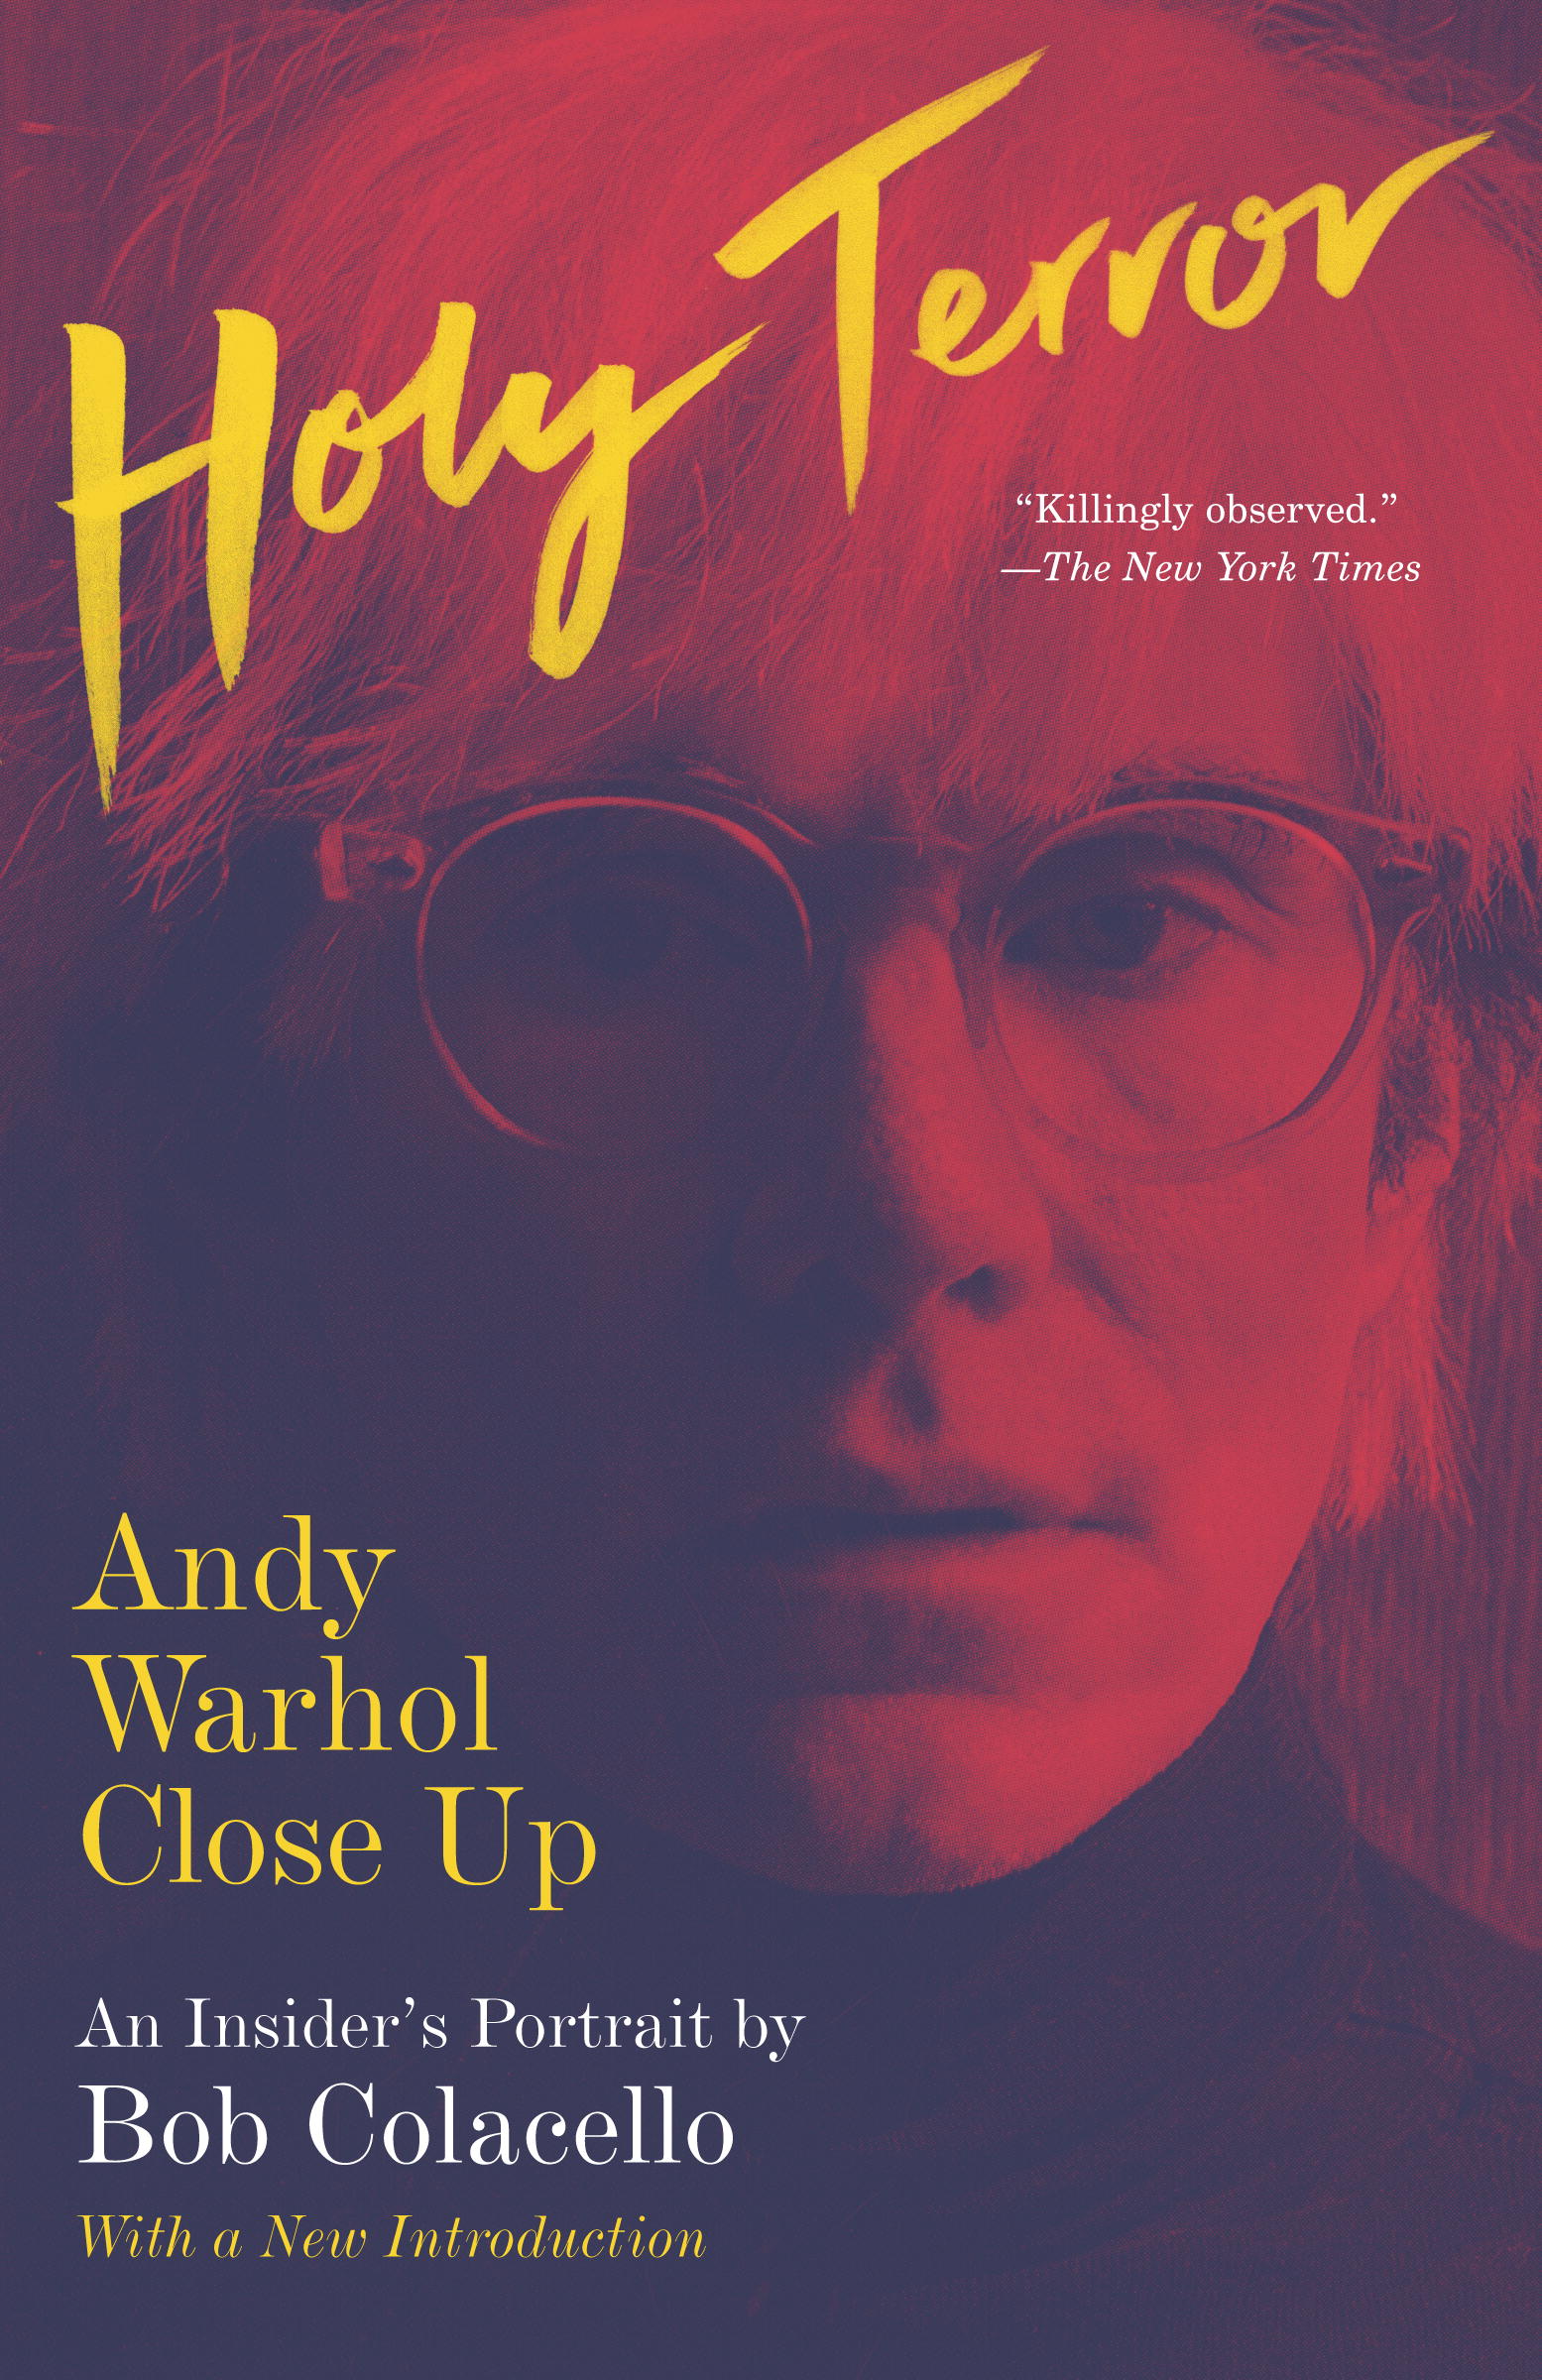 El relanzamiento de “Holy Terror”, el mejor libro biográfico sobre Andy Warhol